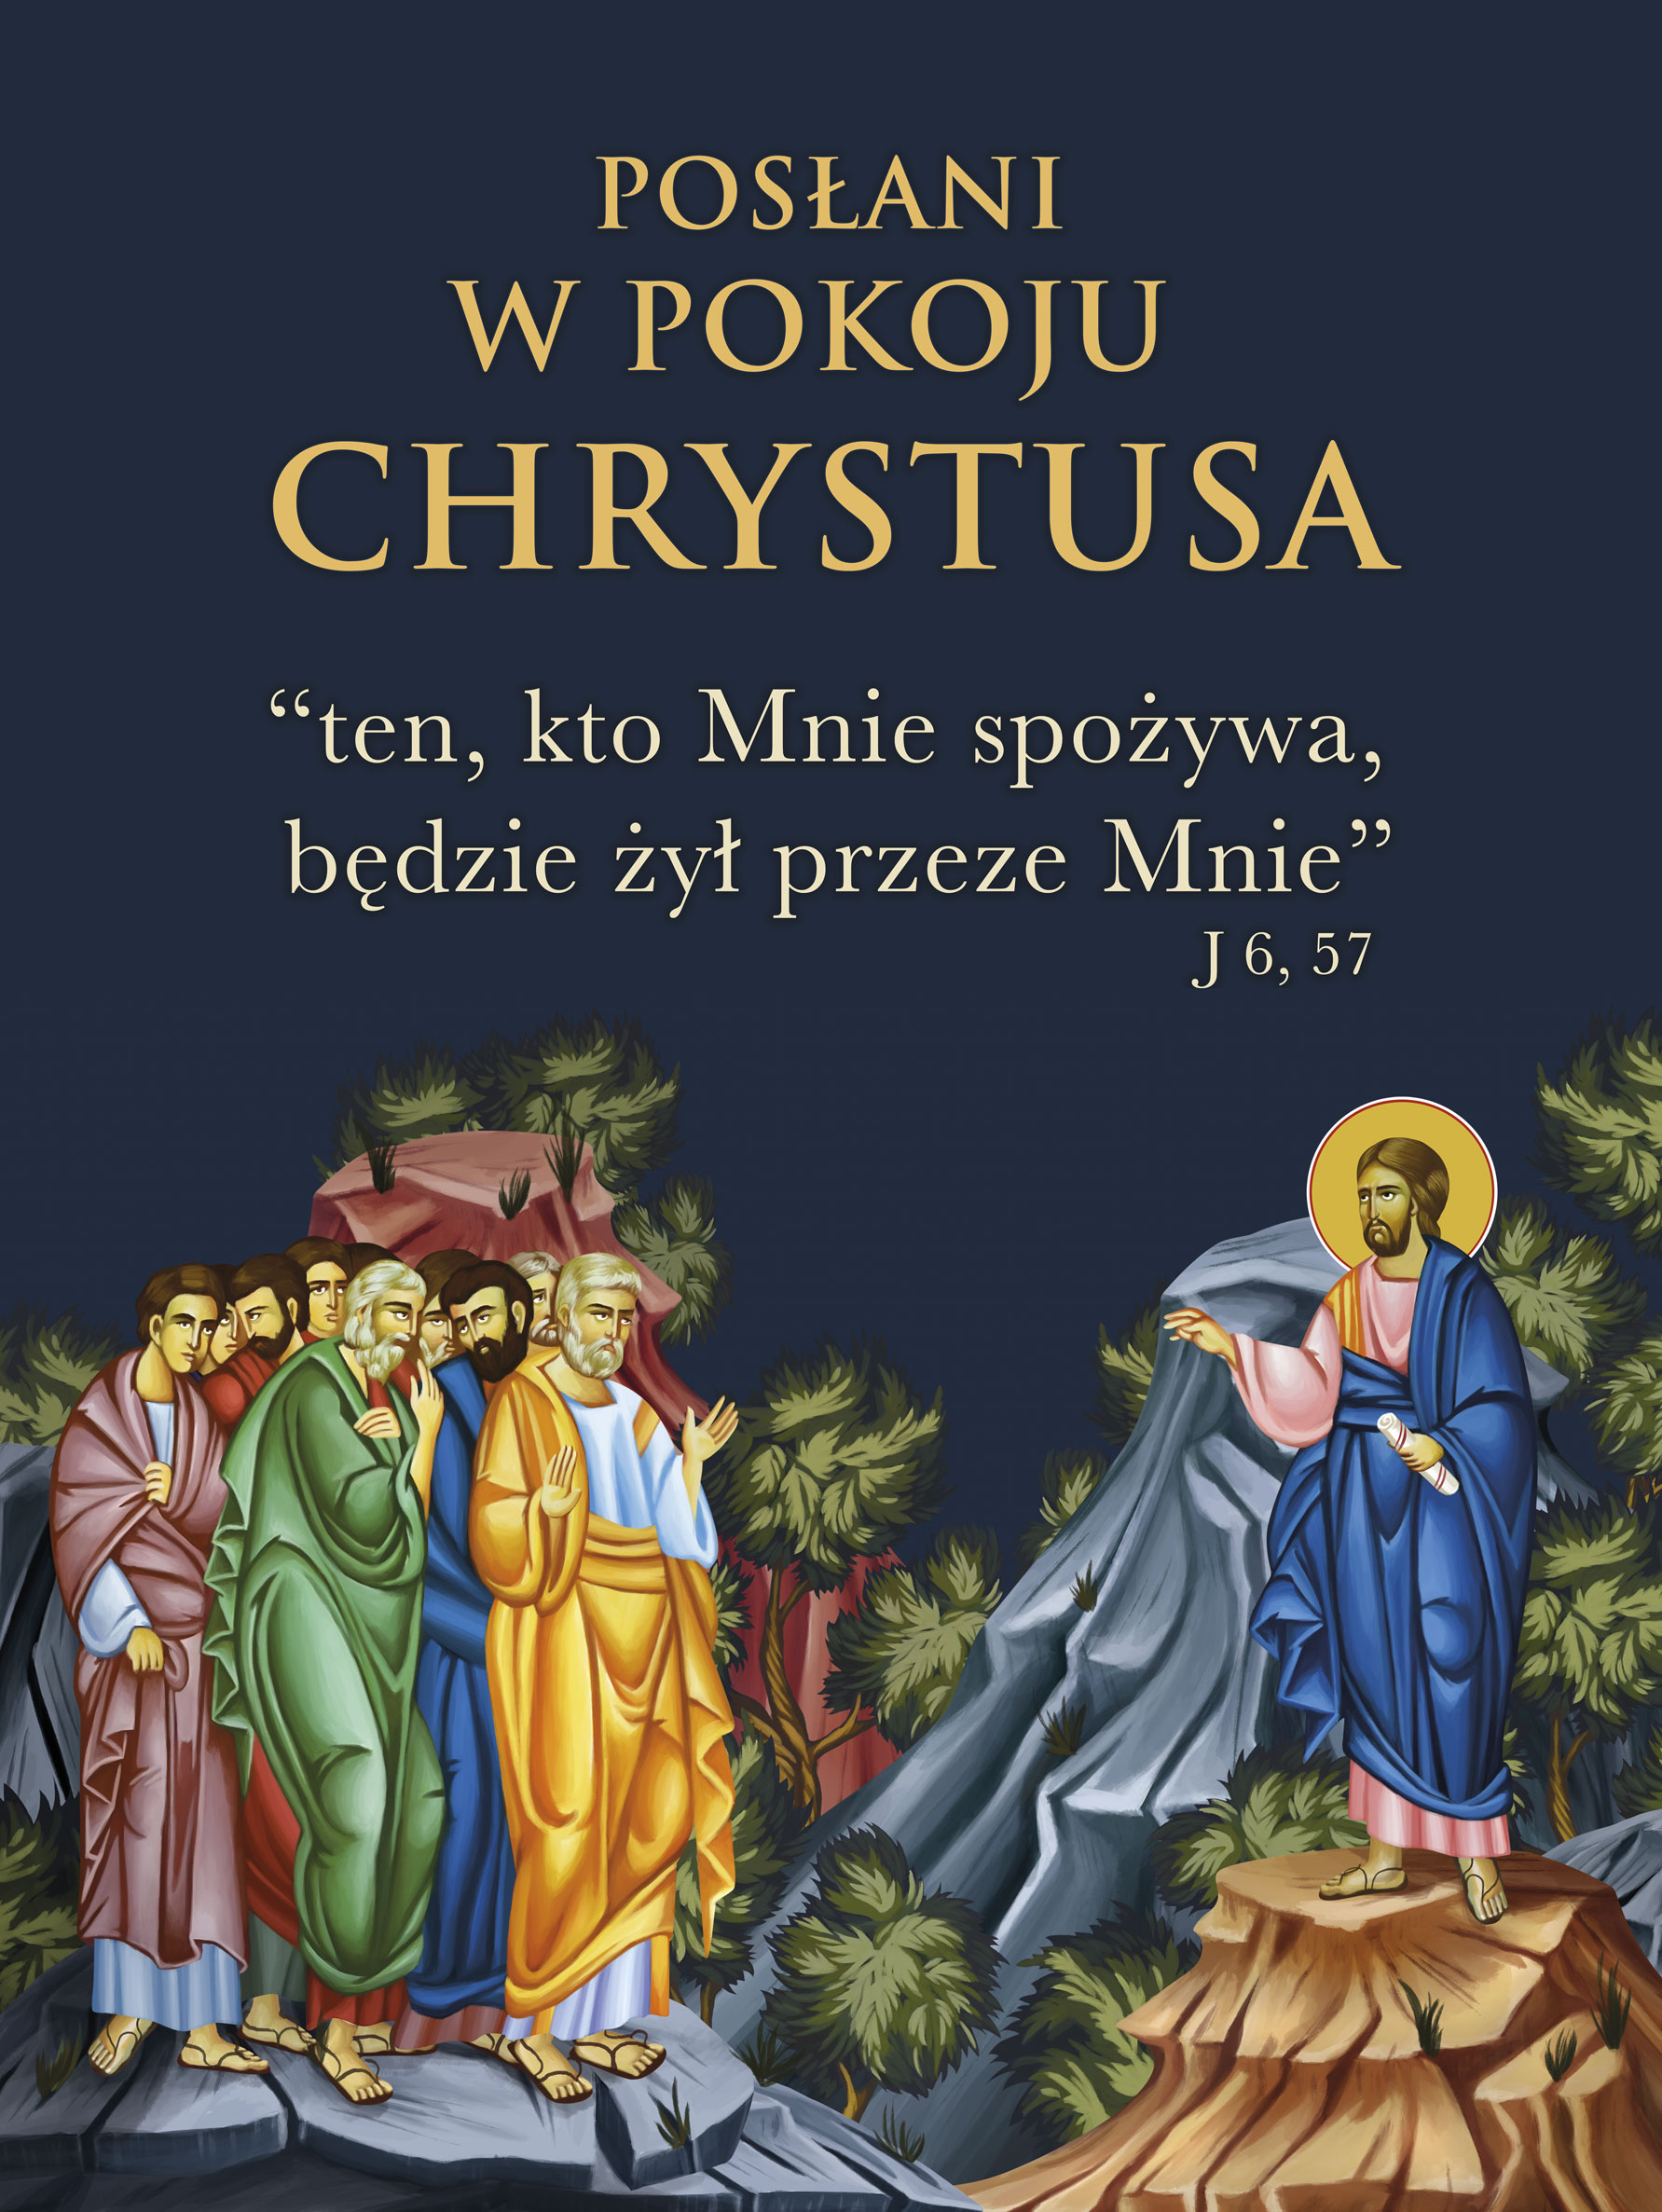 Posłani w pokoju Chrystusa - 05 - Baner religijny - 150x200